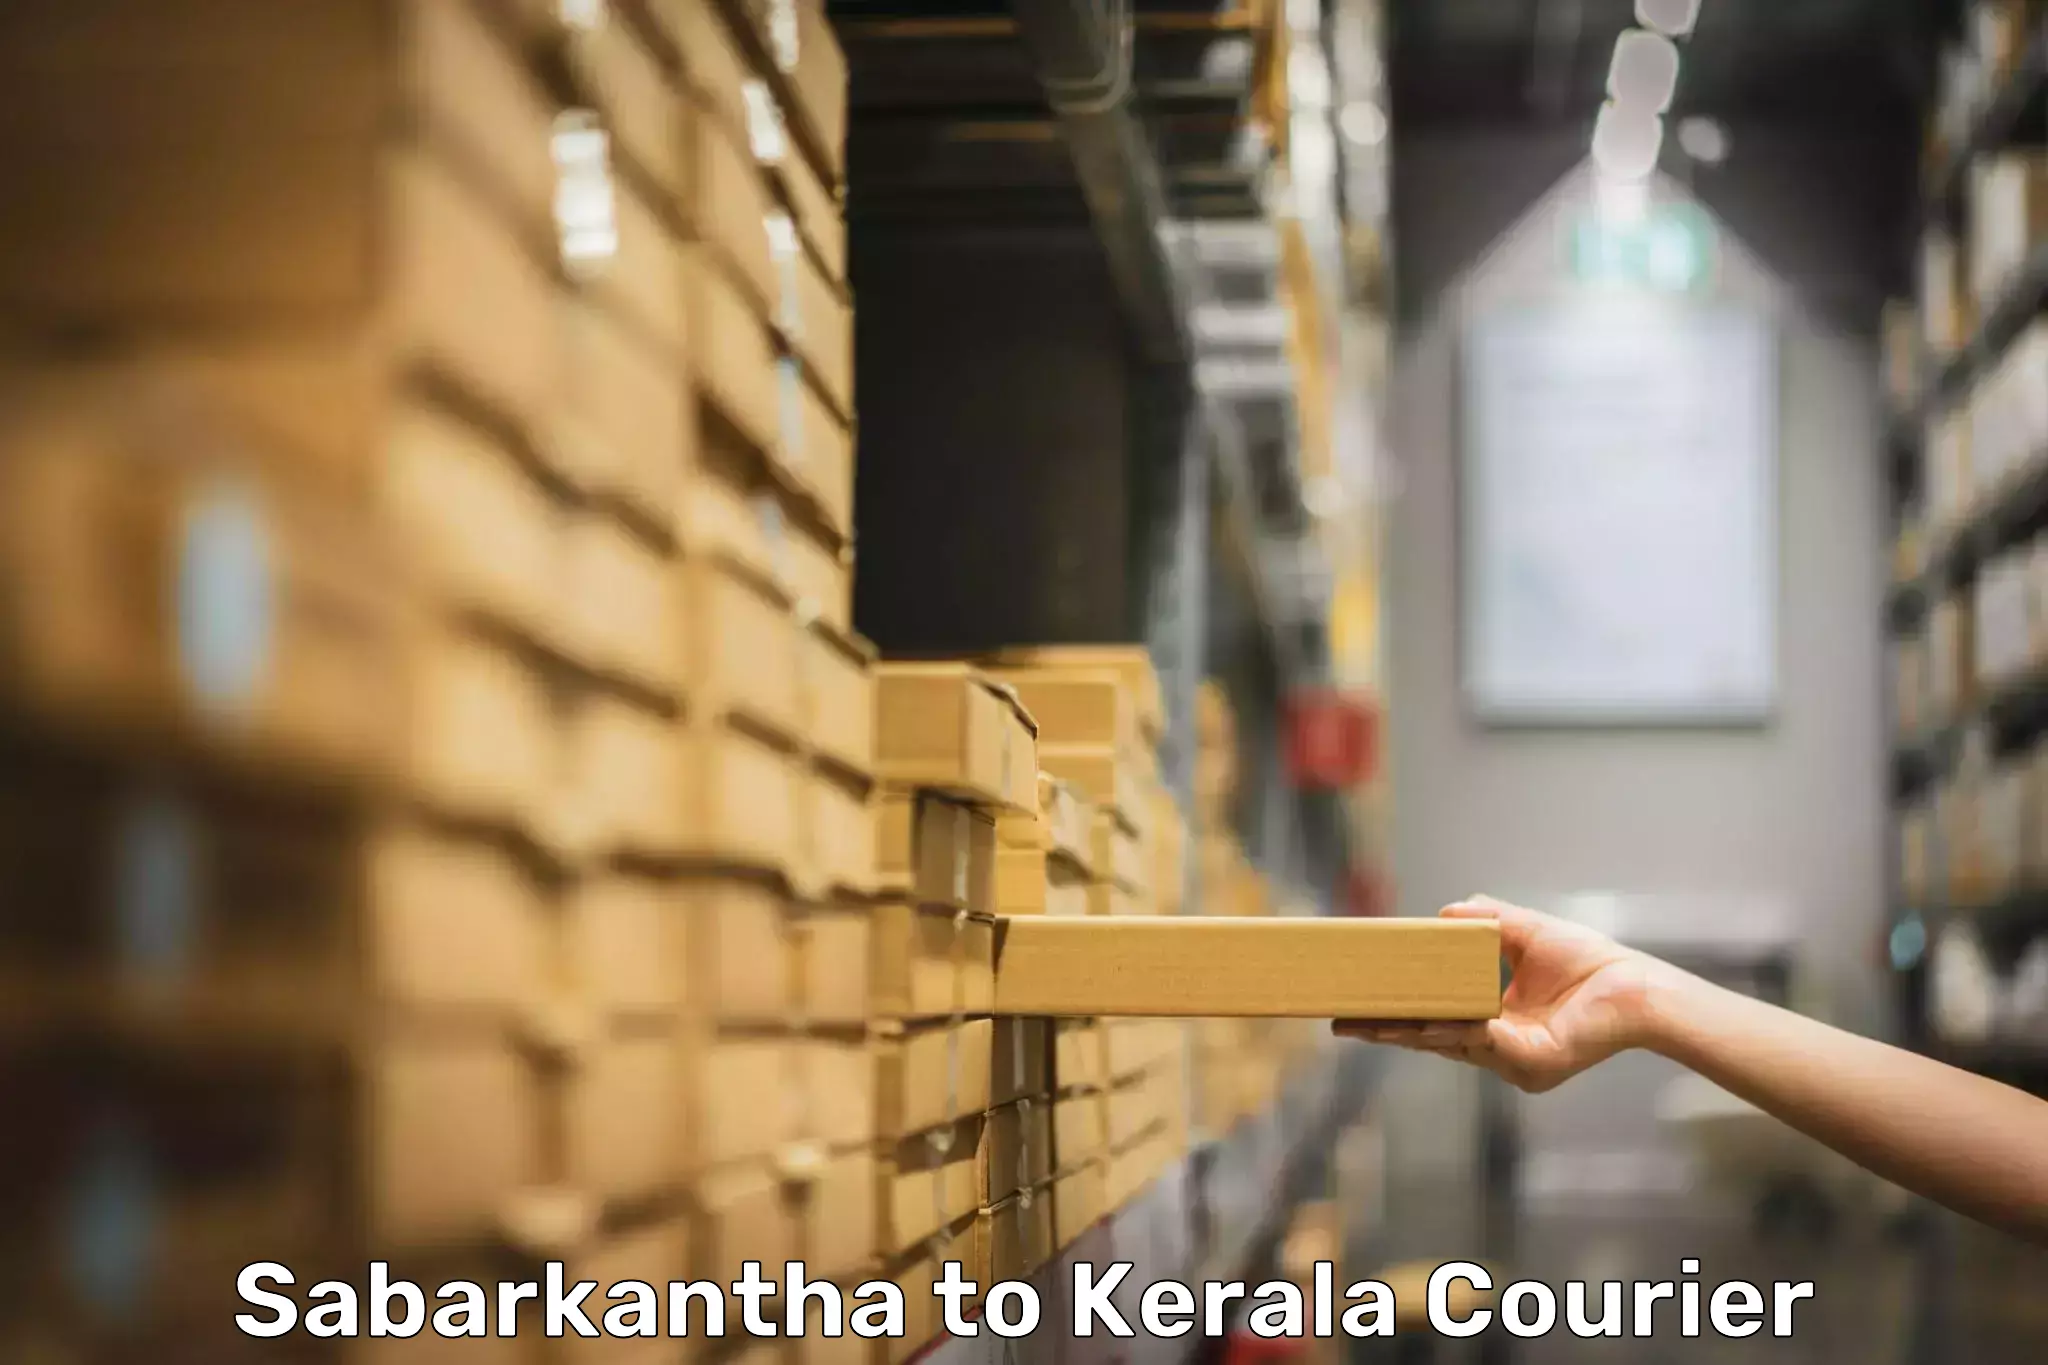 Baggage shipping experience Sabarkantha to Kerala